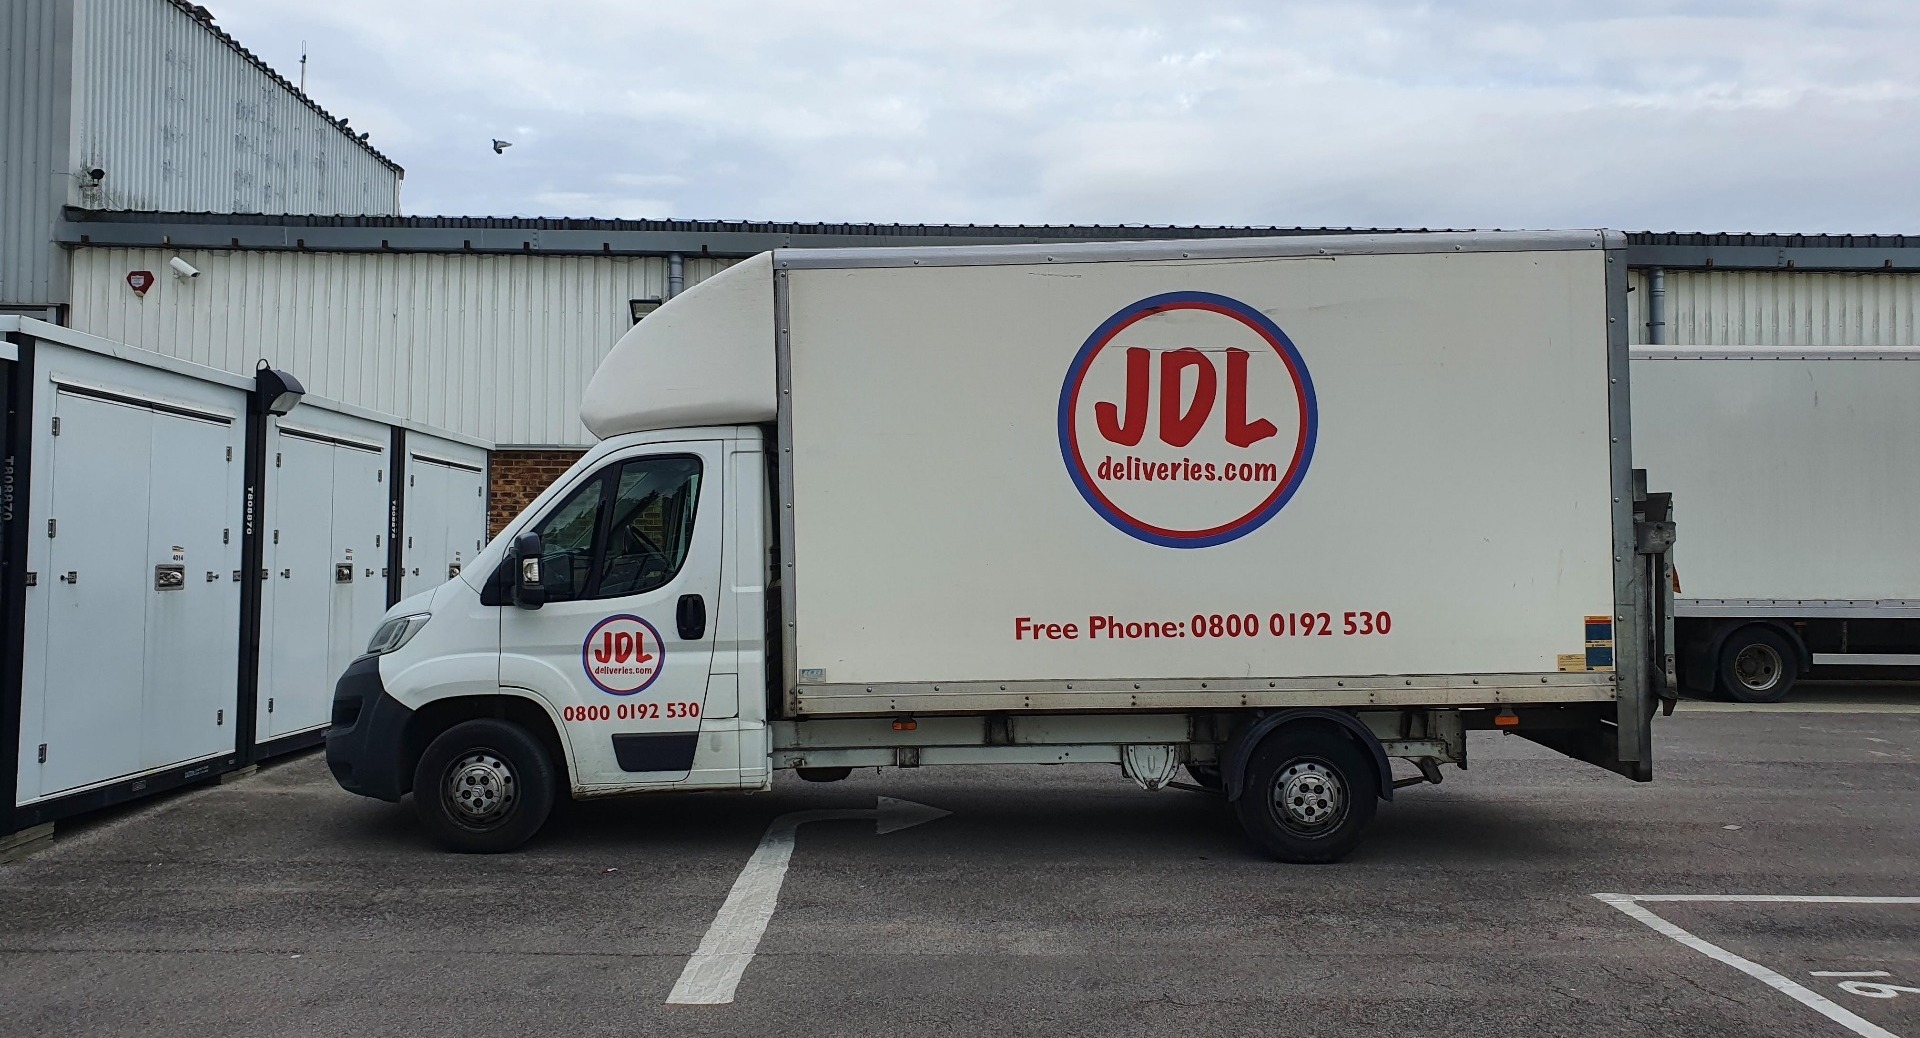 JDL Deliveries Luton Tail Lift Van